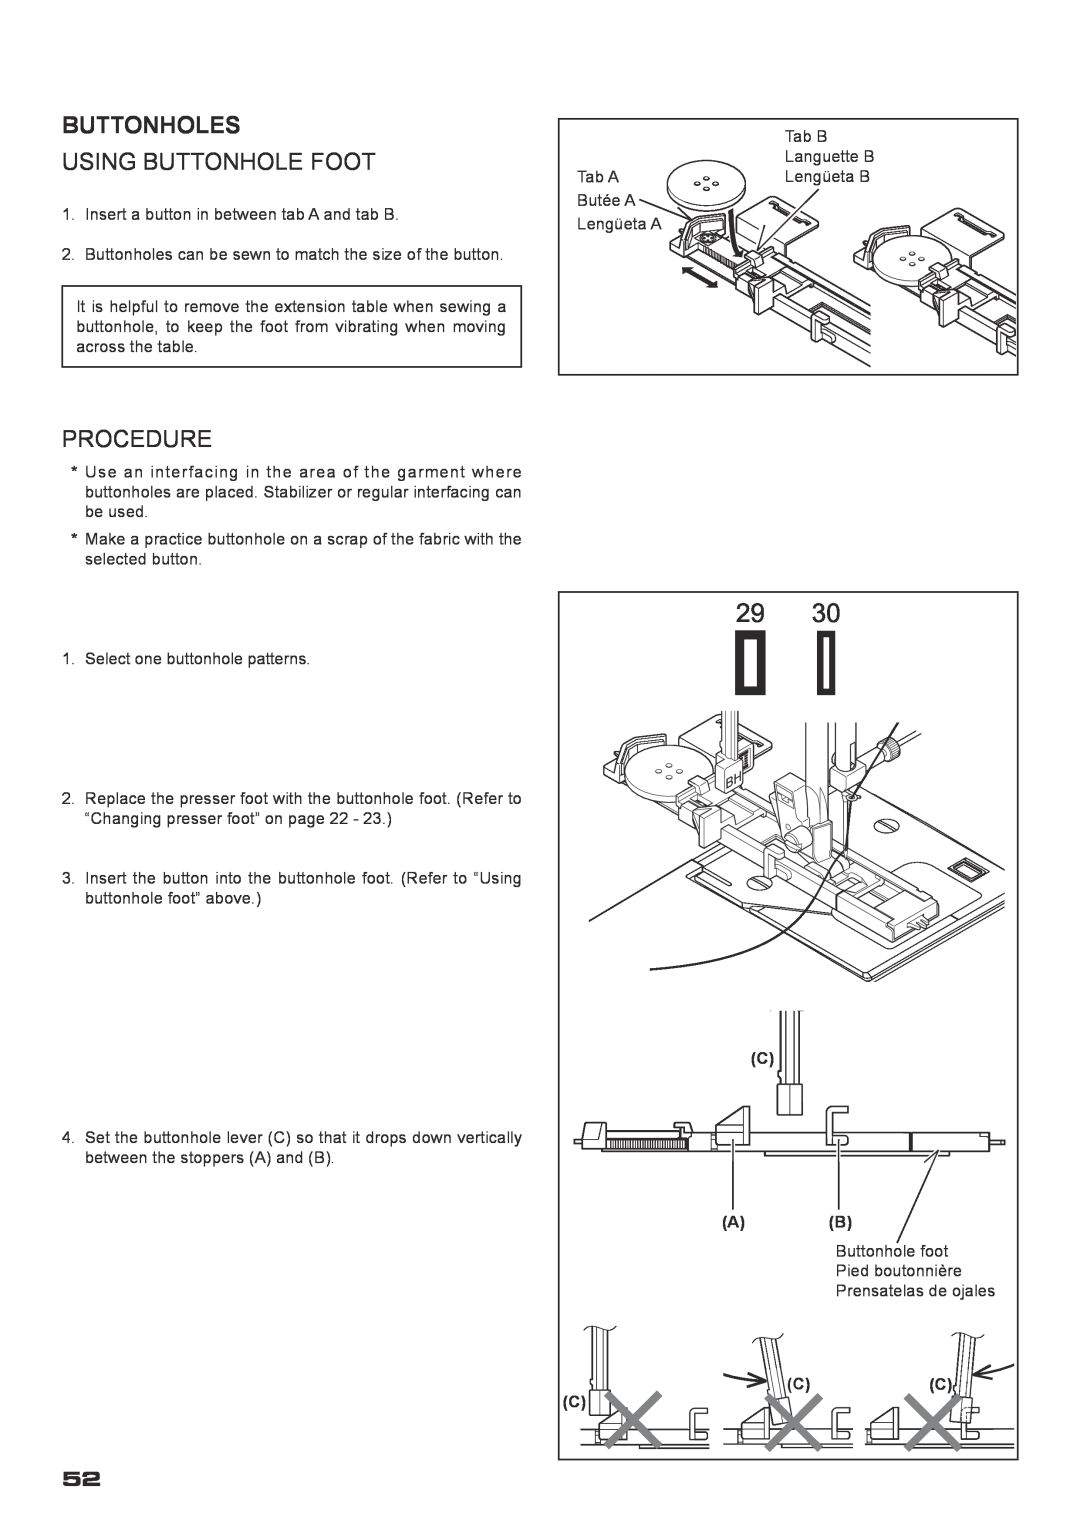 Singer XL-400 instruction manual Buttonholes, Using Buttonhole Foot, Procedure 